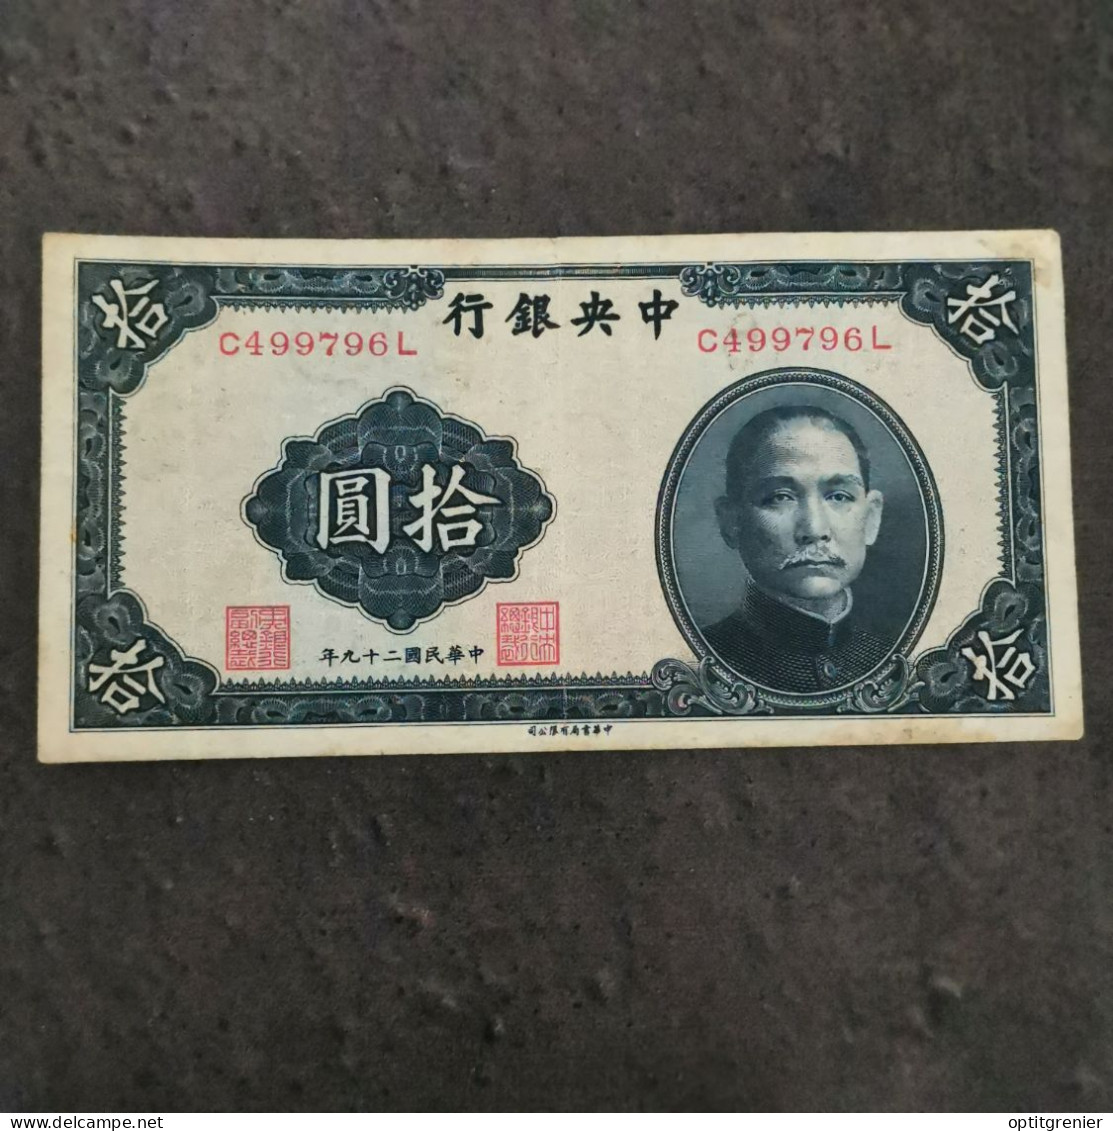 BILLET CIRCULE 10 YUAN 1940 CHINE / CHINA  BANKNOTE - China